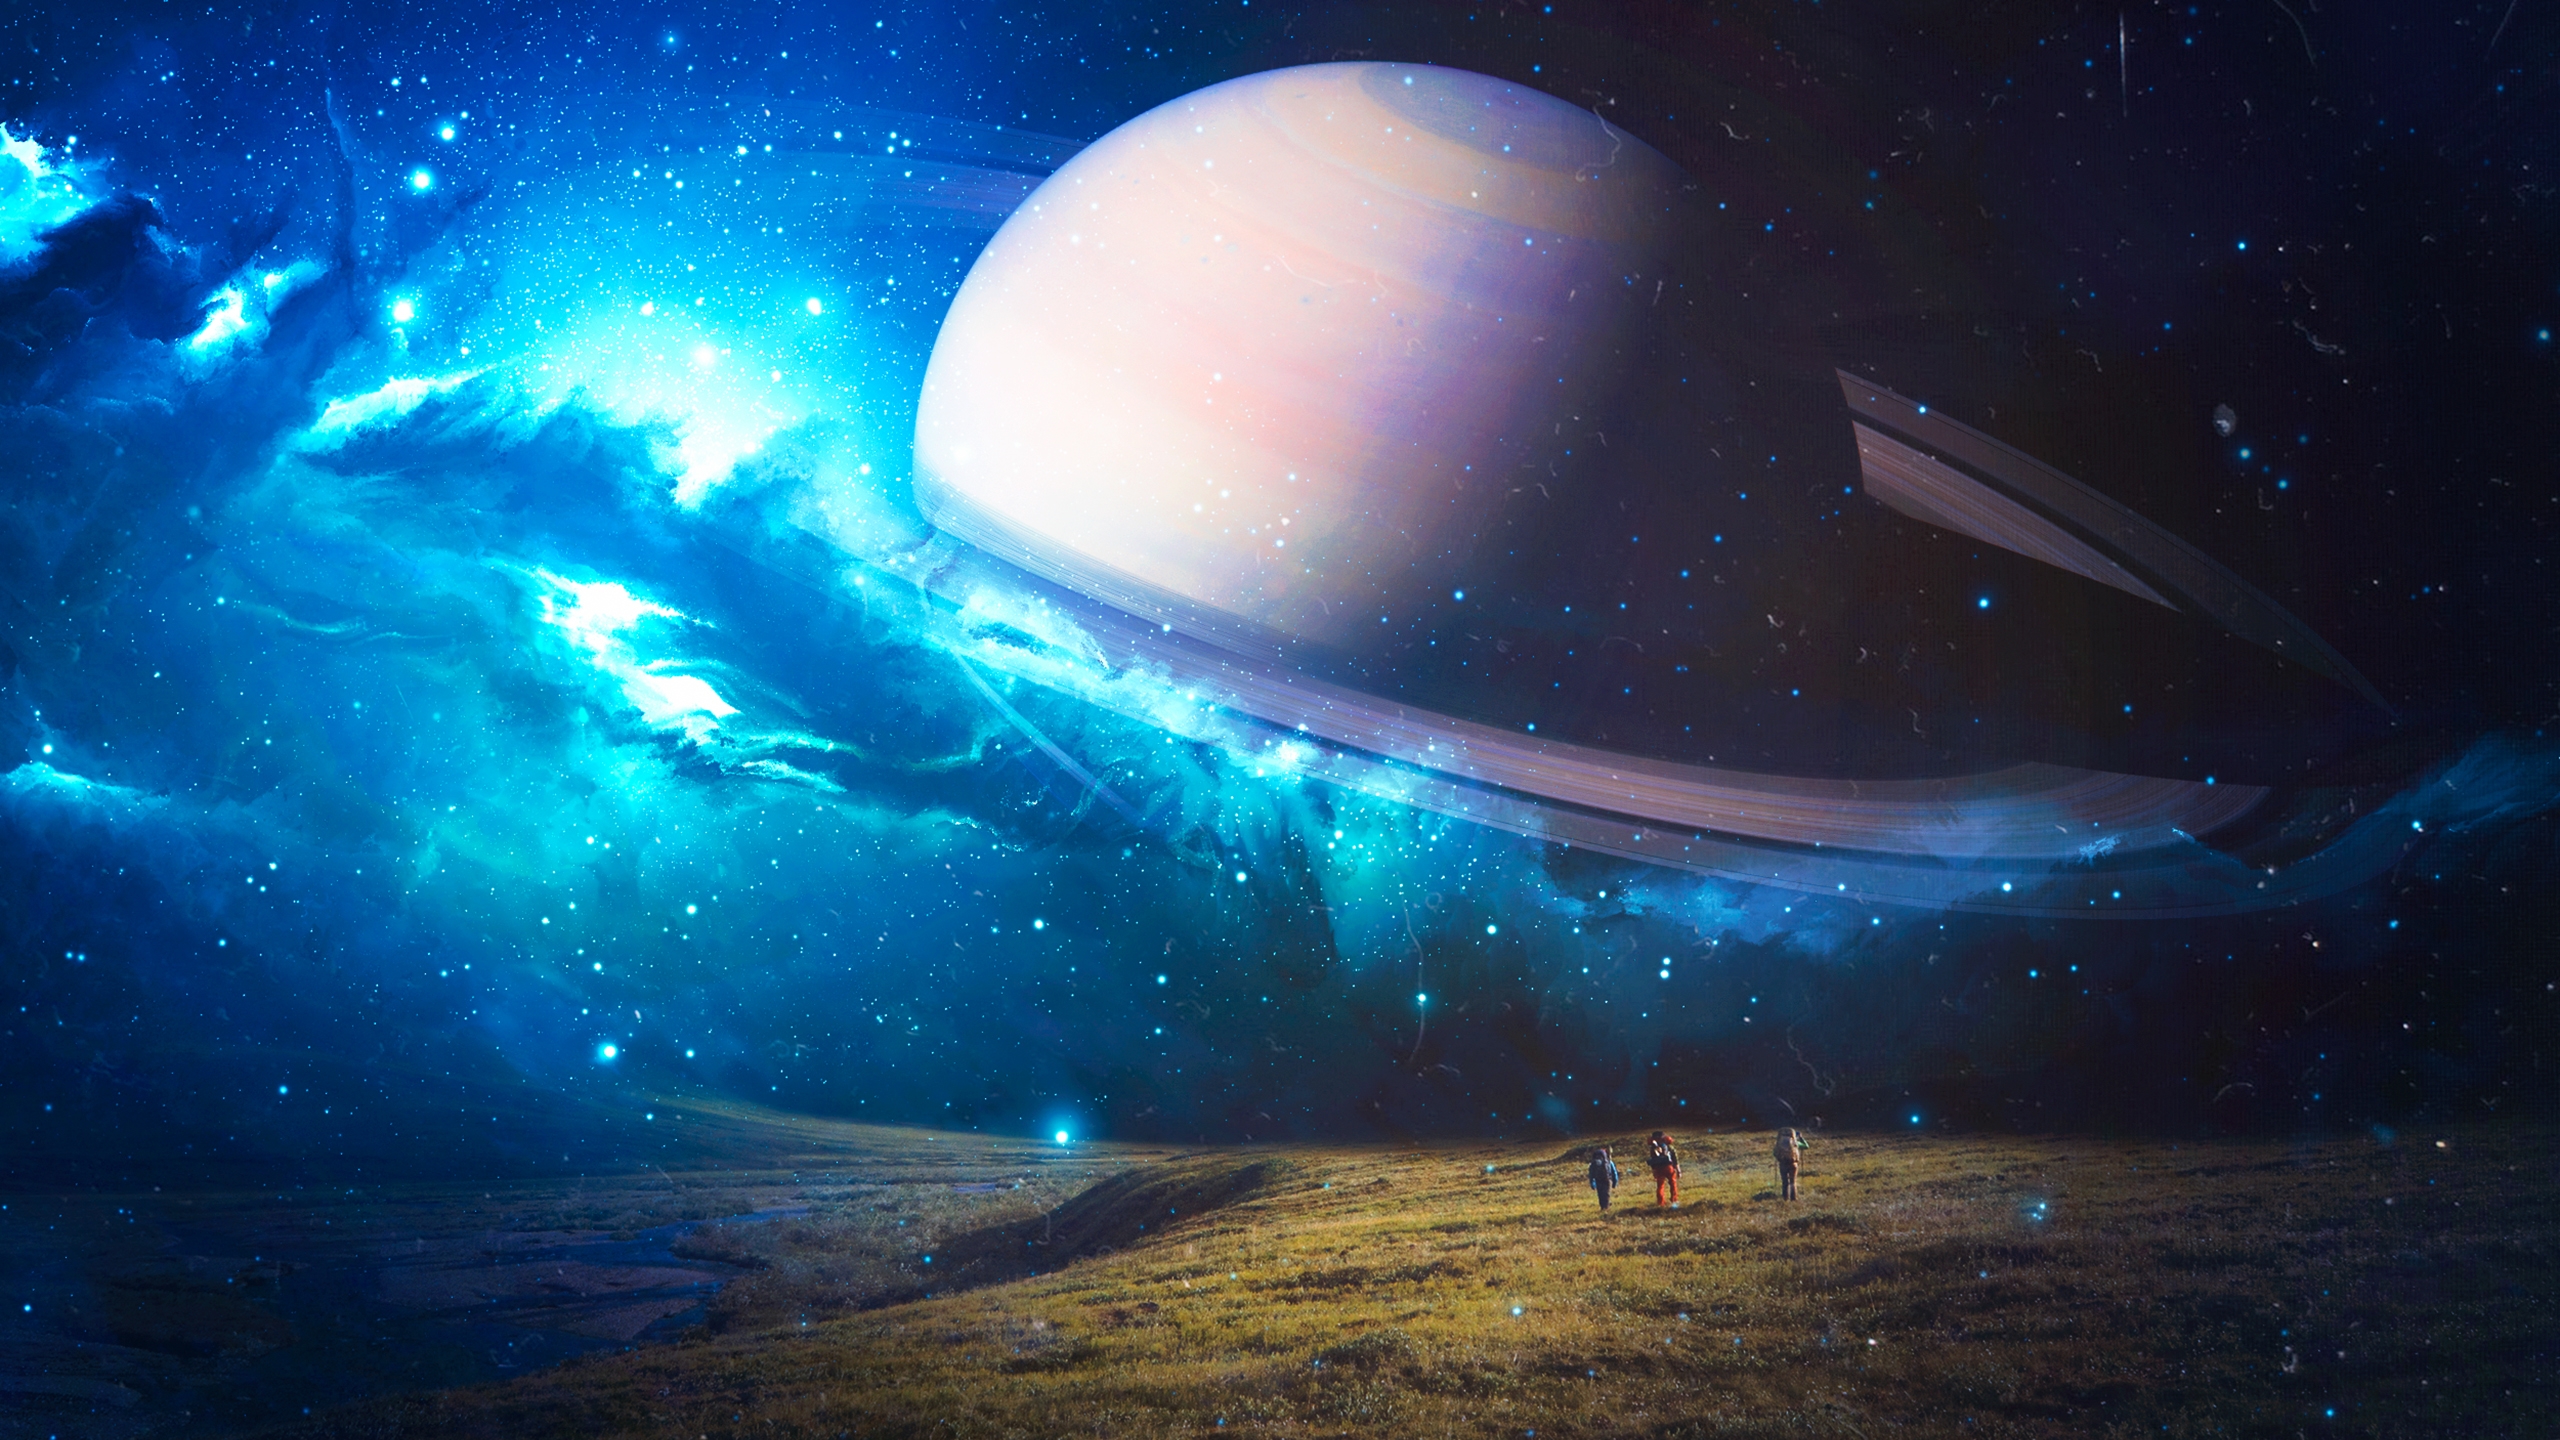 Бесплатное фото Фантастическая картинка с сатурном